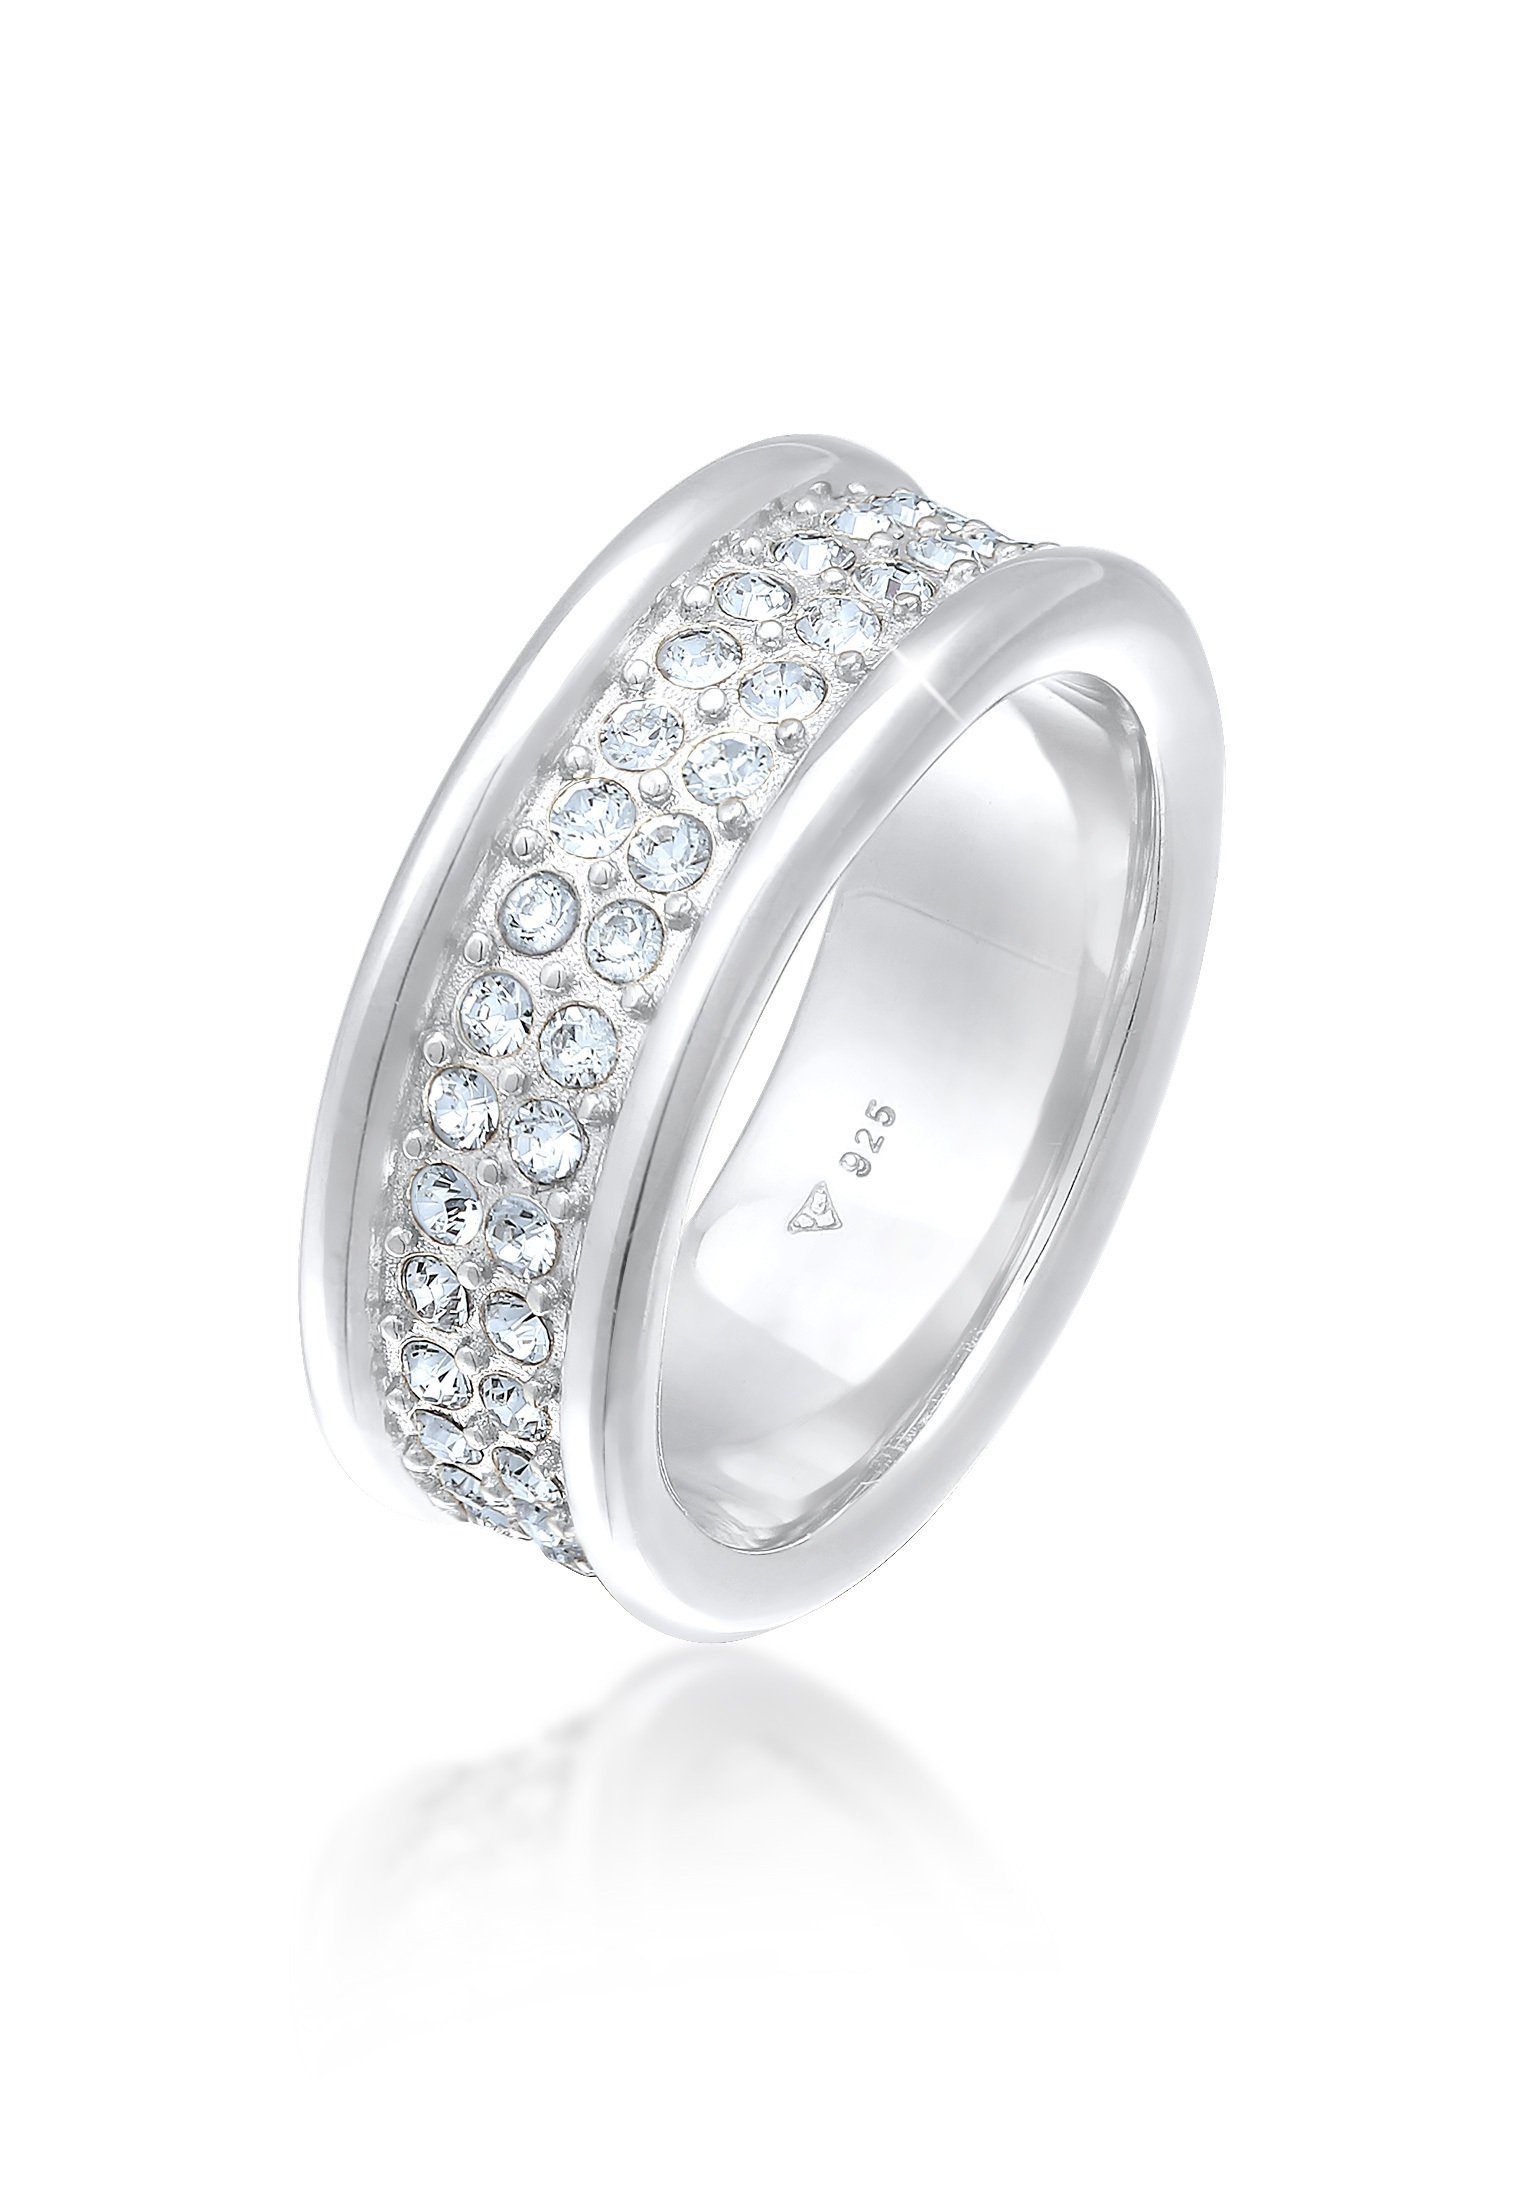 Premium Fingerring Silber Bandring Elegant Elli 925 Kristall